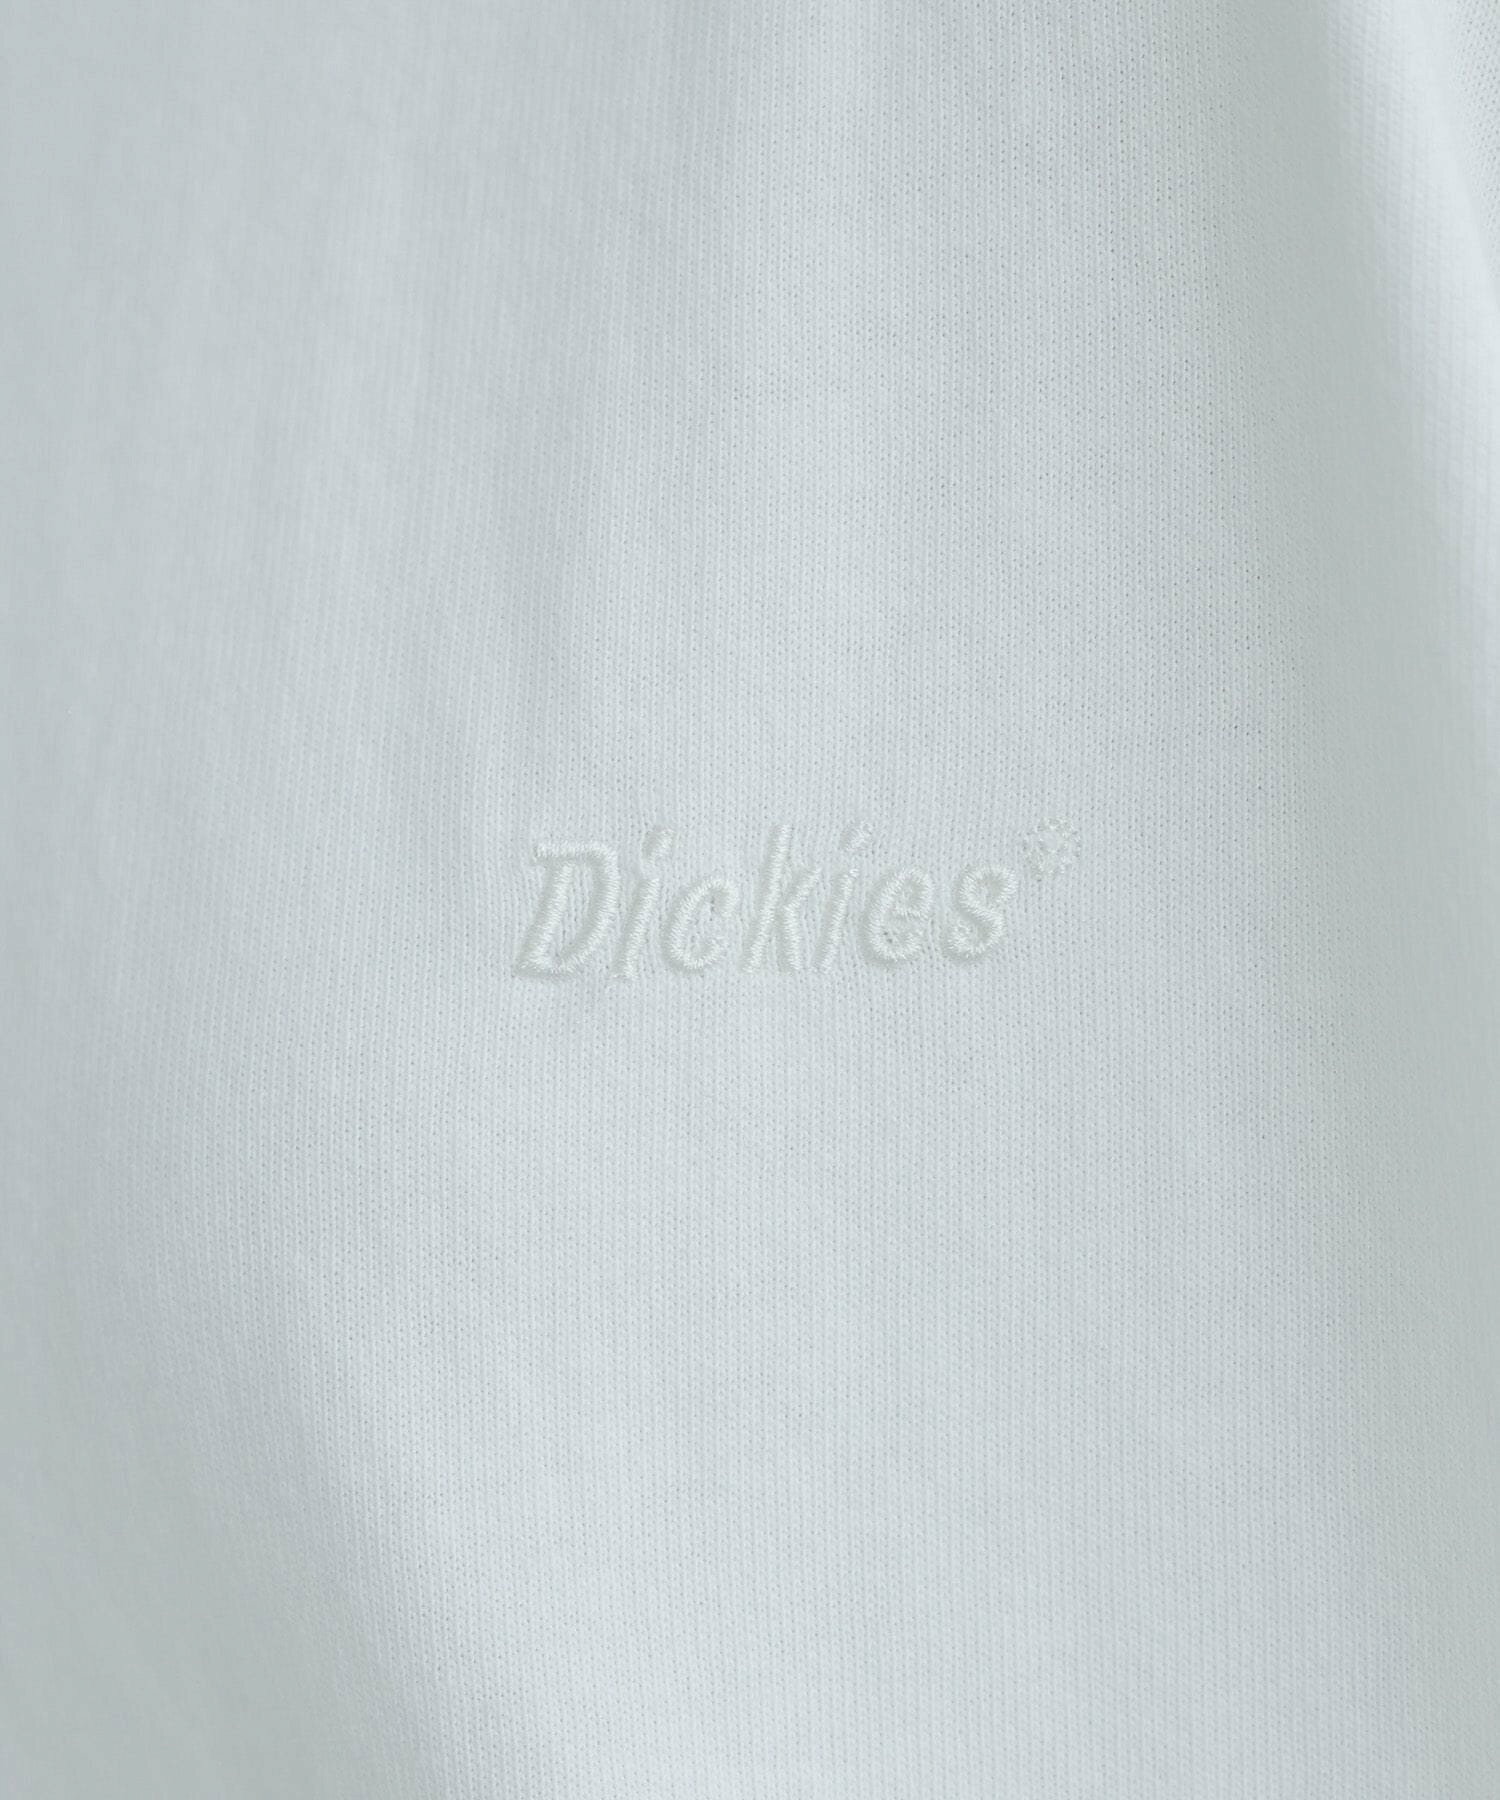 Dickies/ピグメントルーズTシャツ